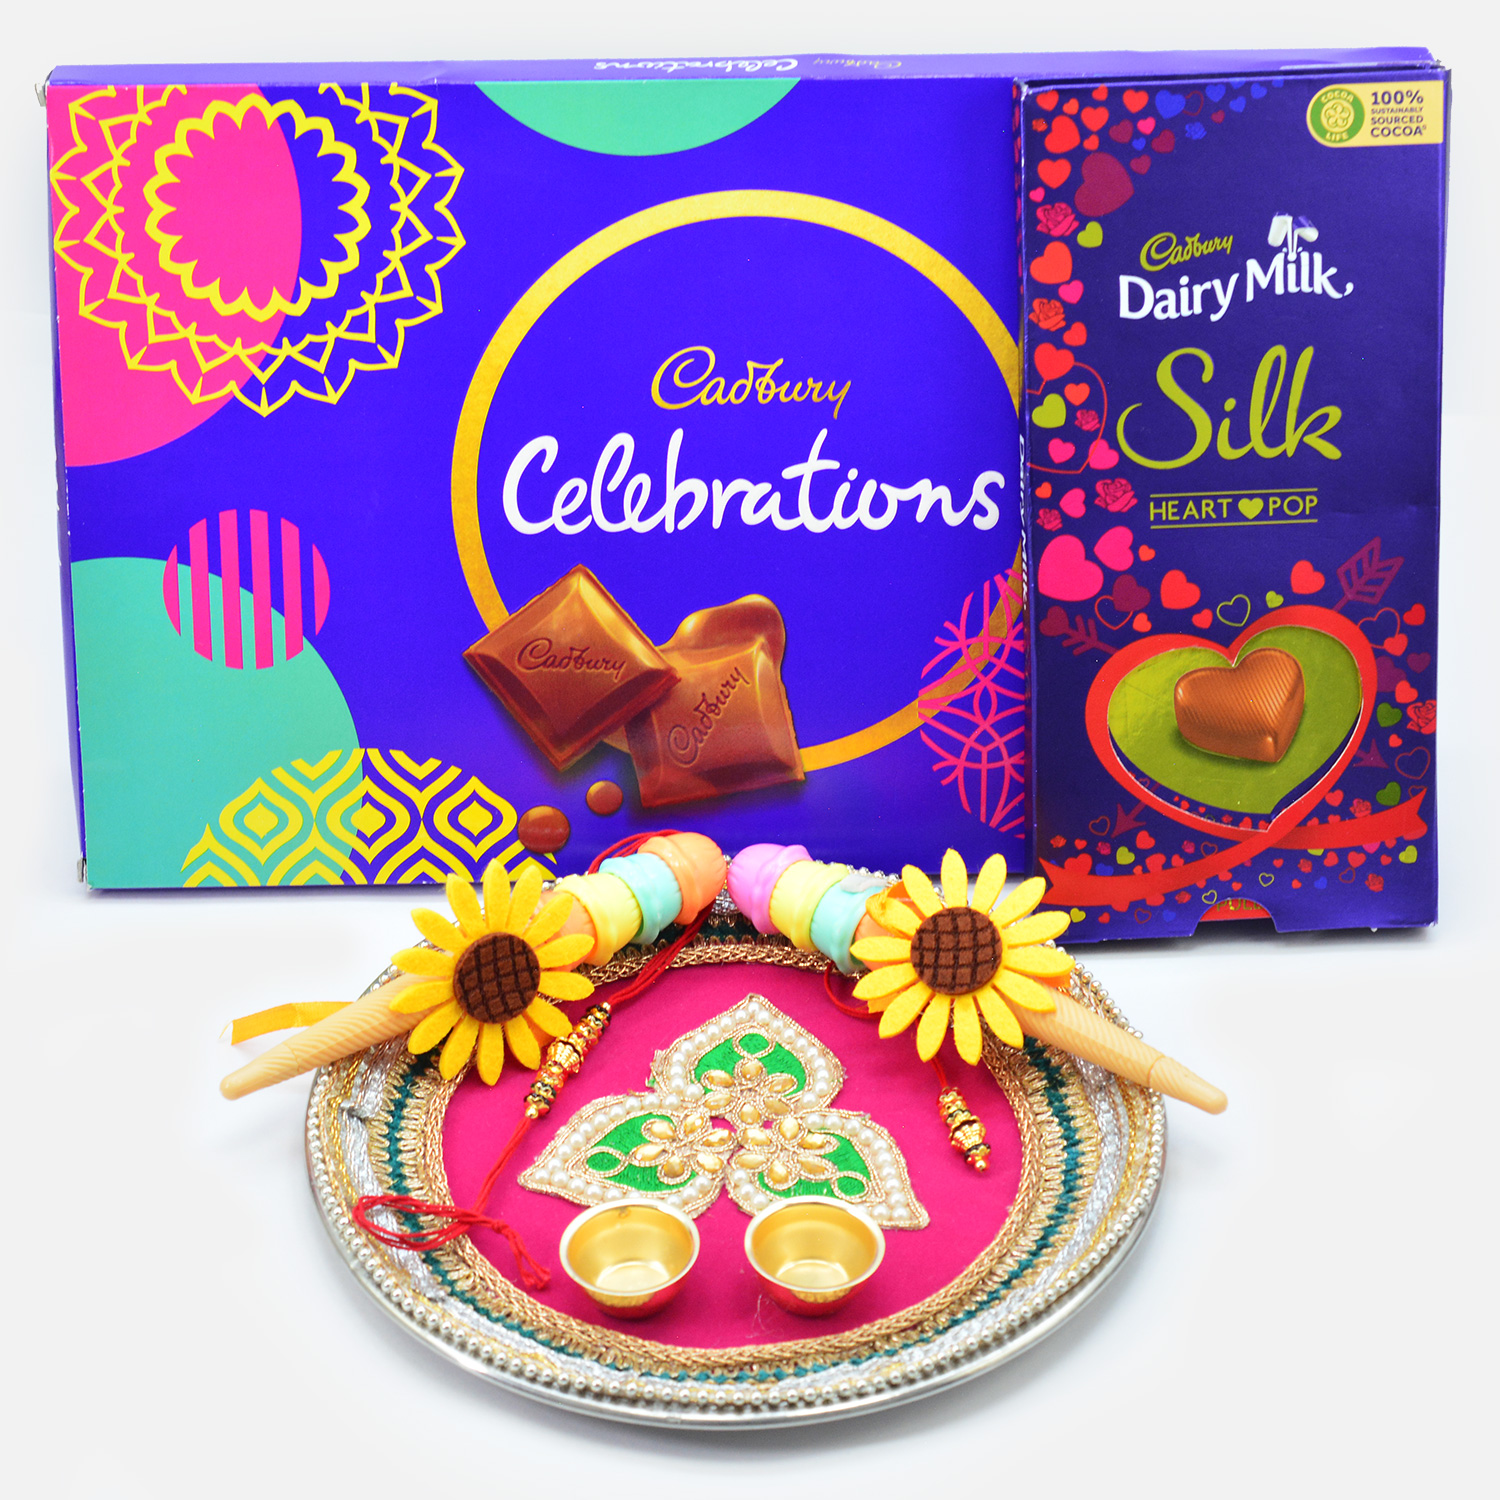 Cadbury Celebration and Silk Chocolates with Amazing Toy Kids and Bhaiya Bhabhi Rakhis along with Pooja Thali